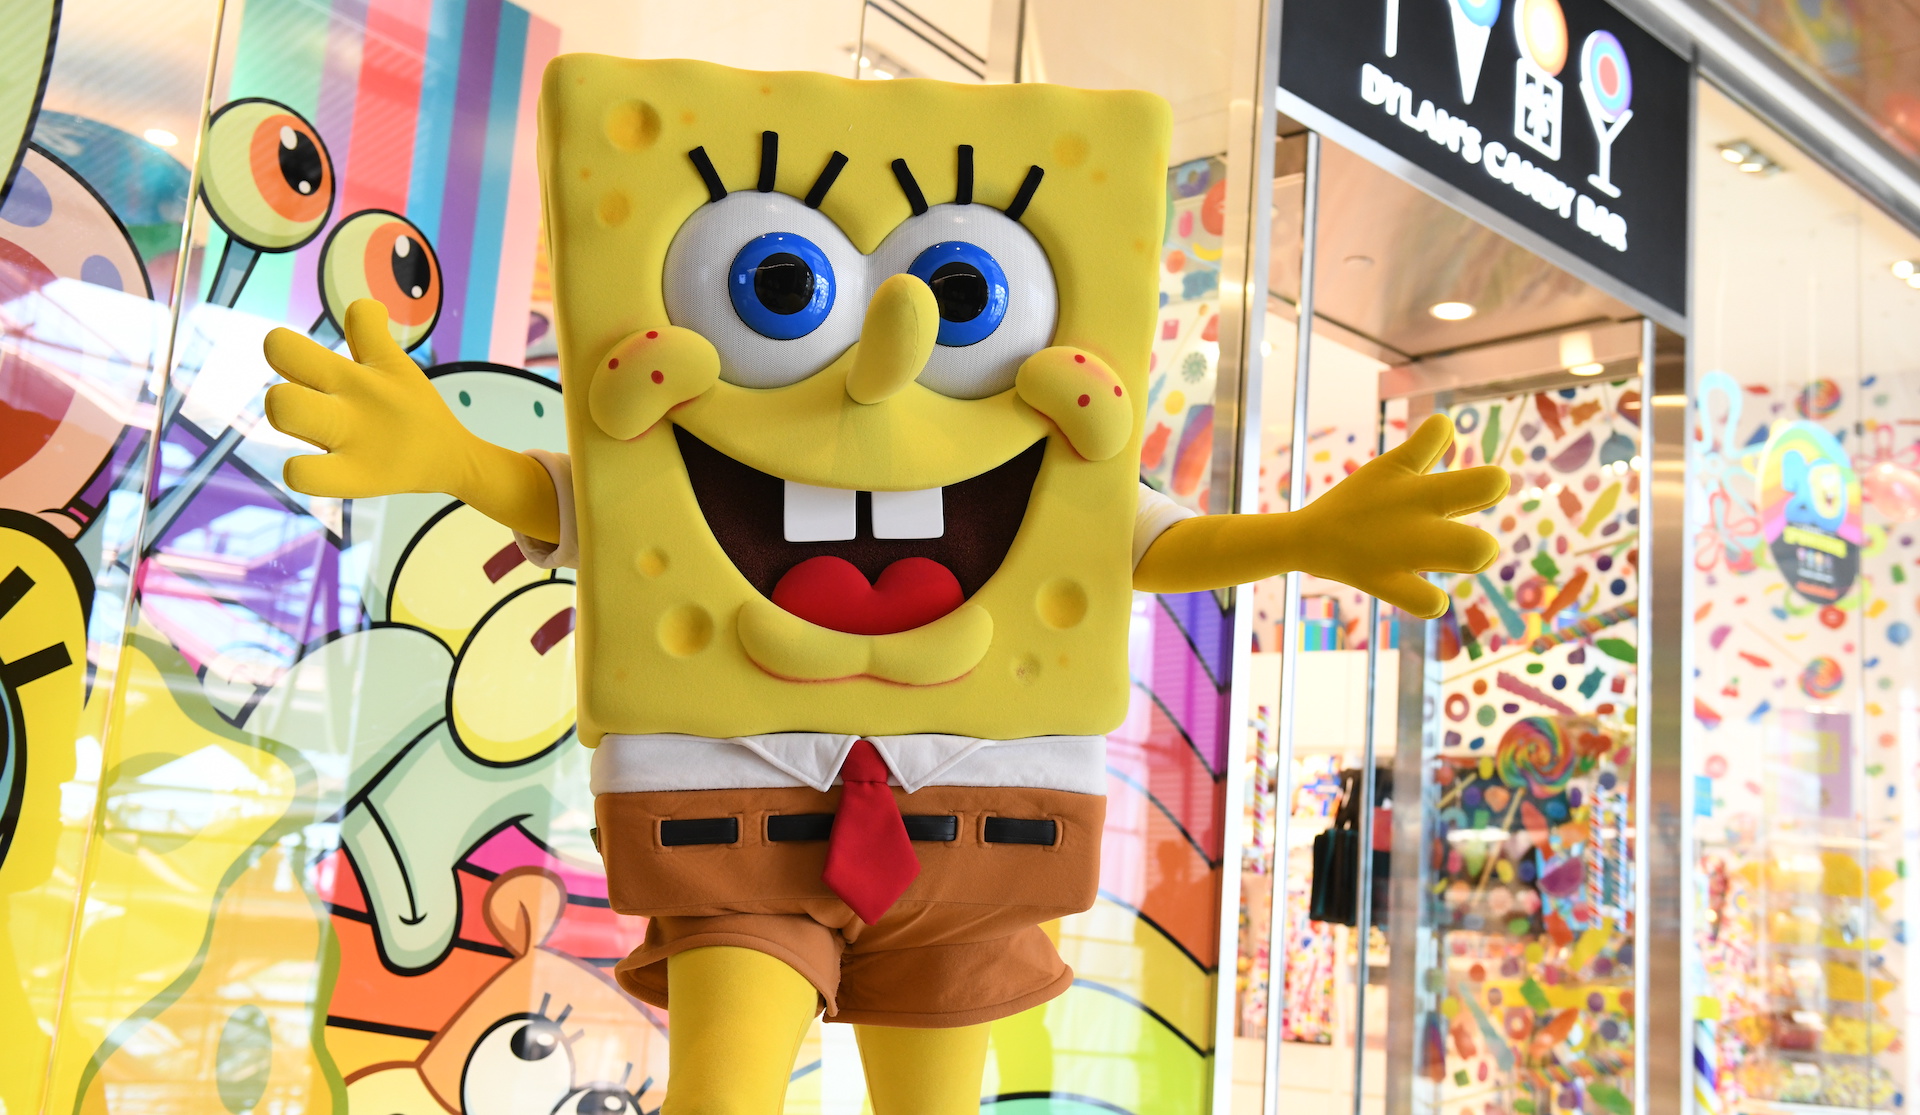 Sponge Bob Square Pants – The Mom+Pip Shop